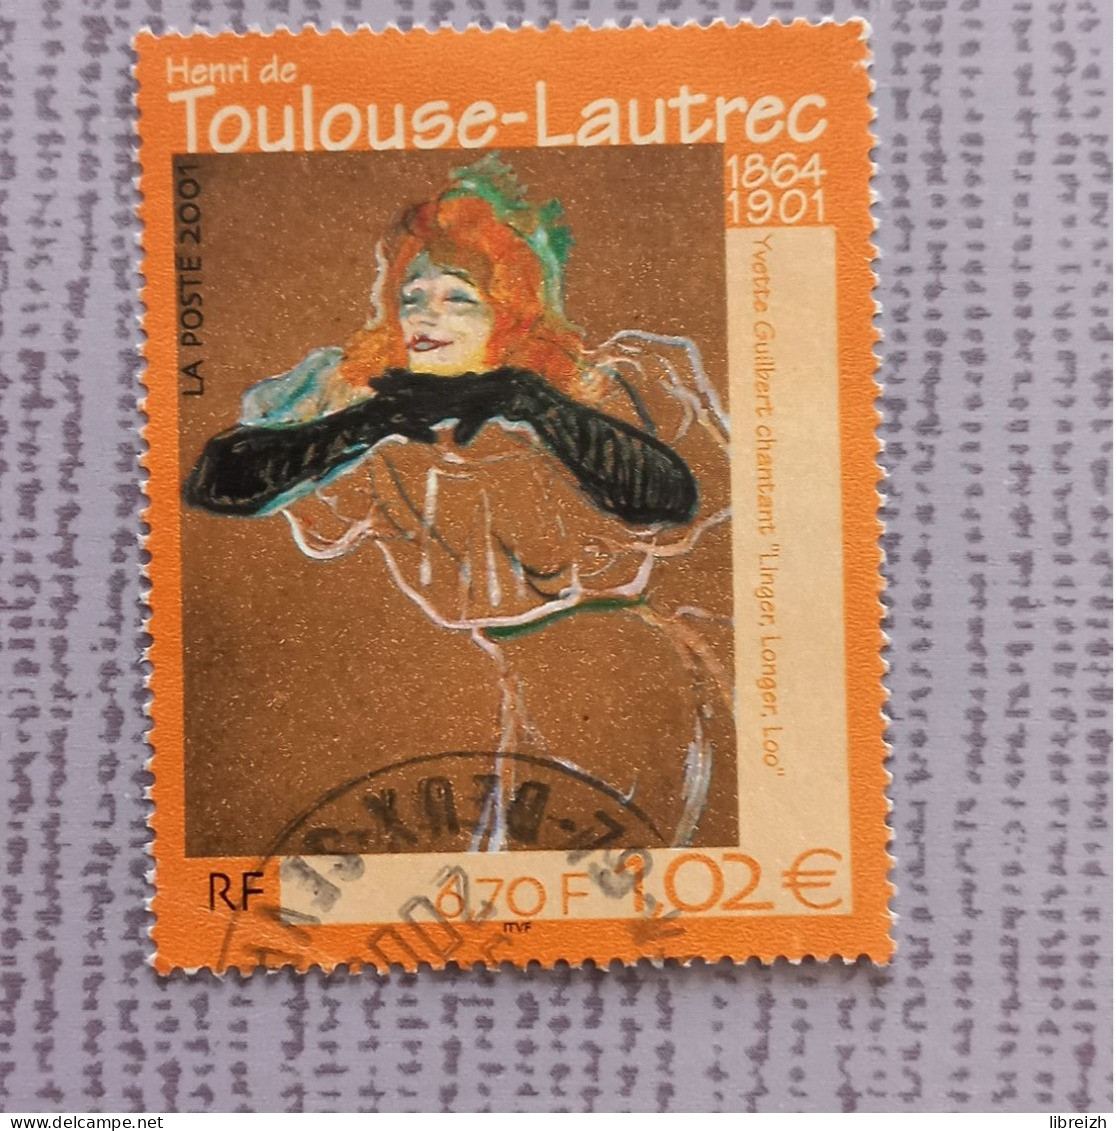 Henri De Toulouse-Lautrec N° 3421  Année 2001 - Oblitérés